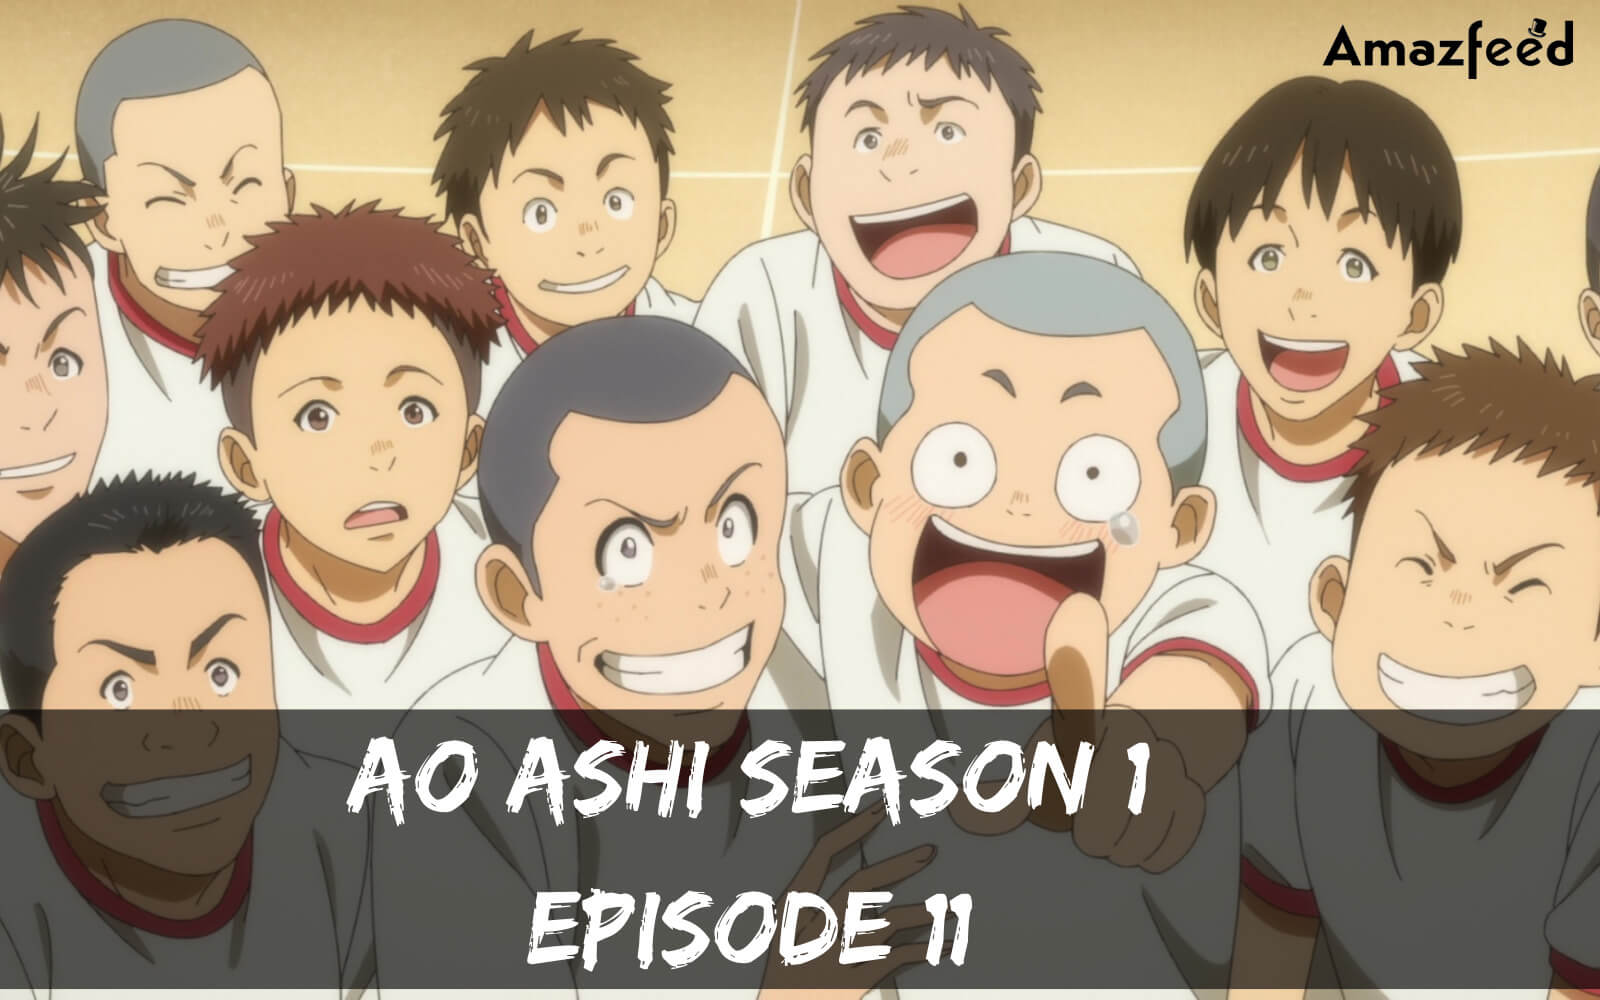 Ao Ashi season 1 Episode 11 release date